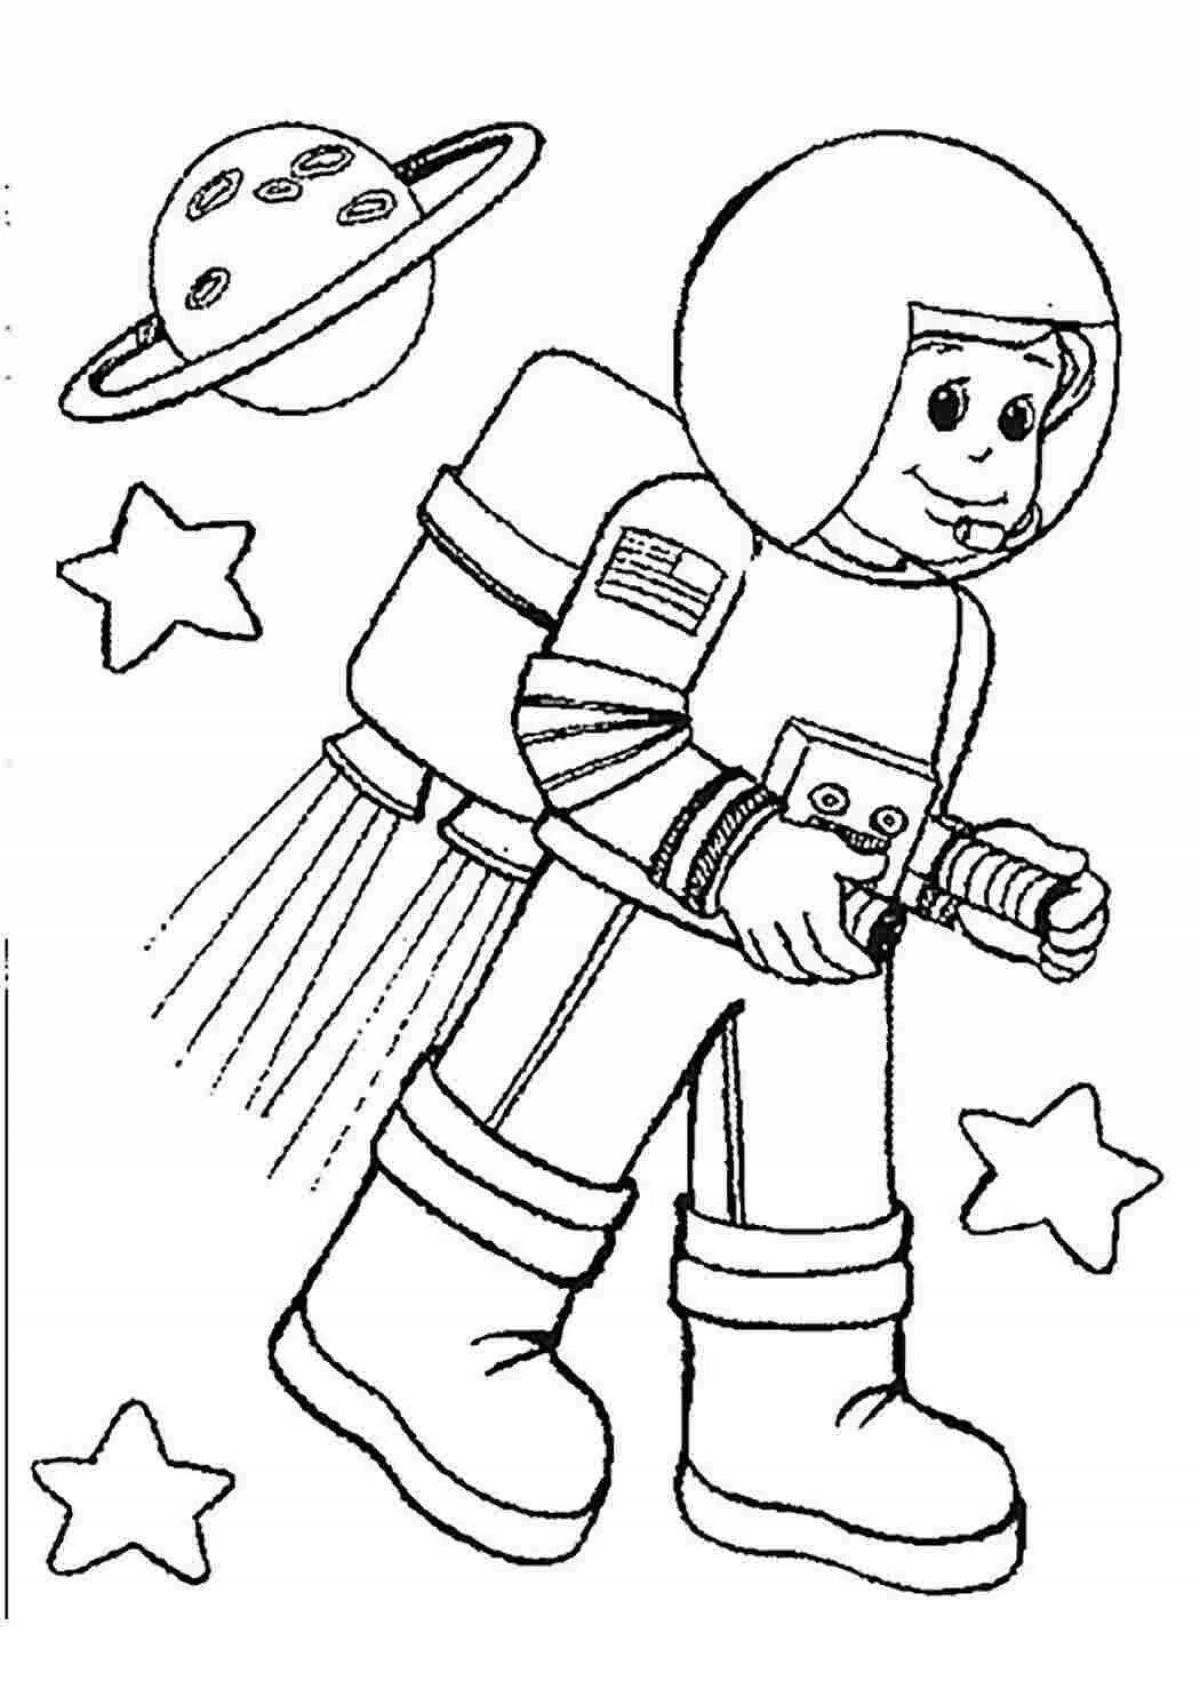 Распечатать космонавта для поделки. Космонавт раскраска для детей. Раскраска. Профессии. Космос раскраска для детей. Раскраски космос для дошкольников.